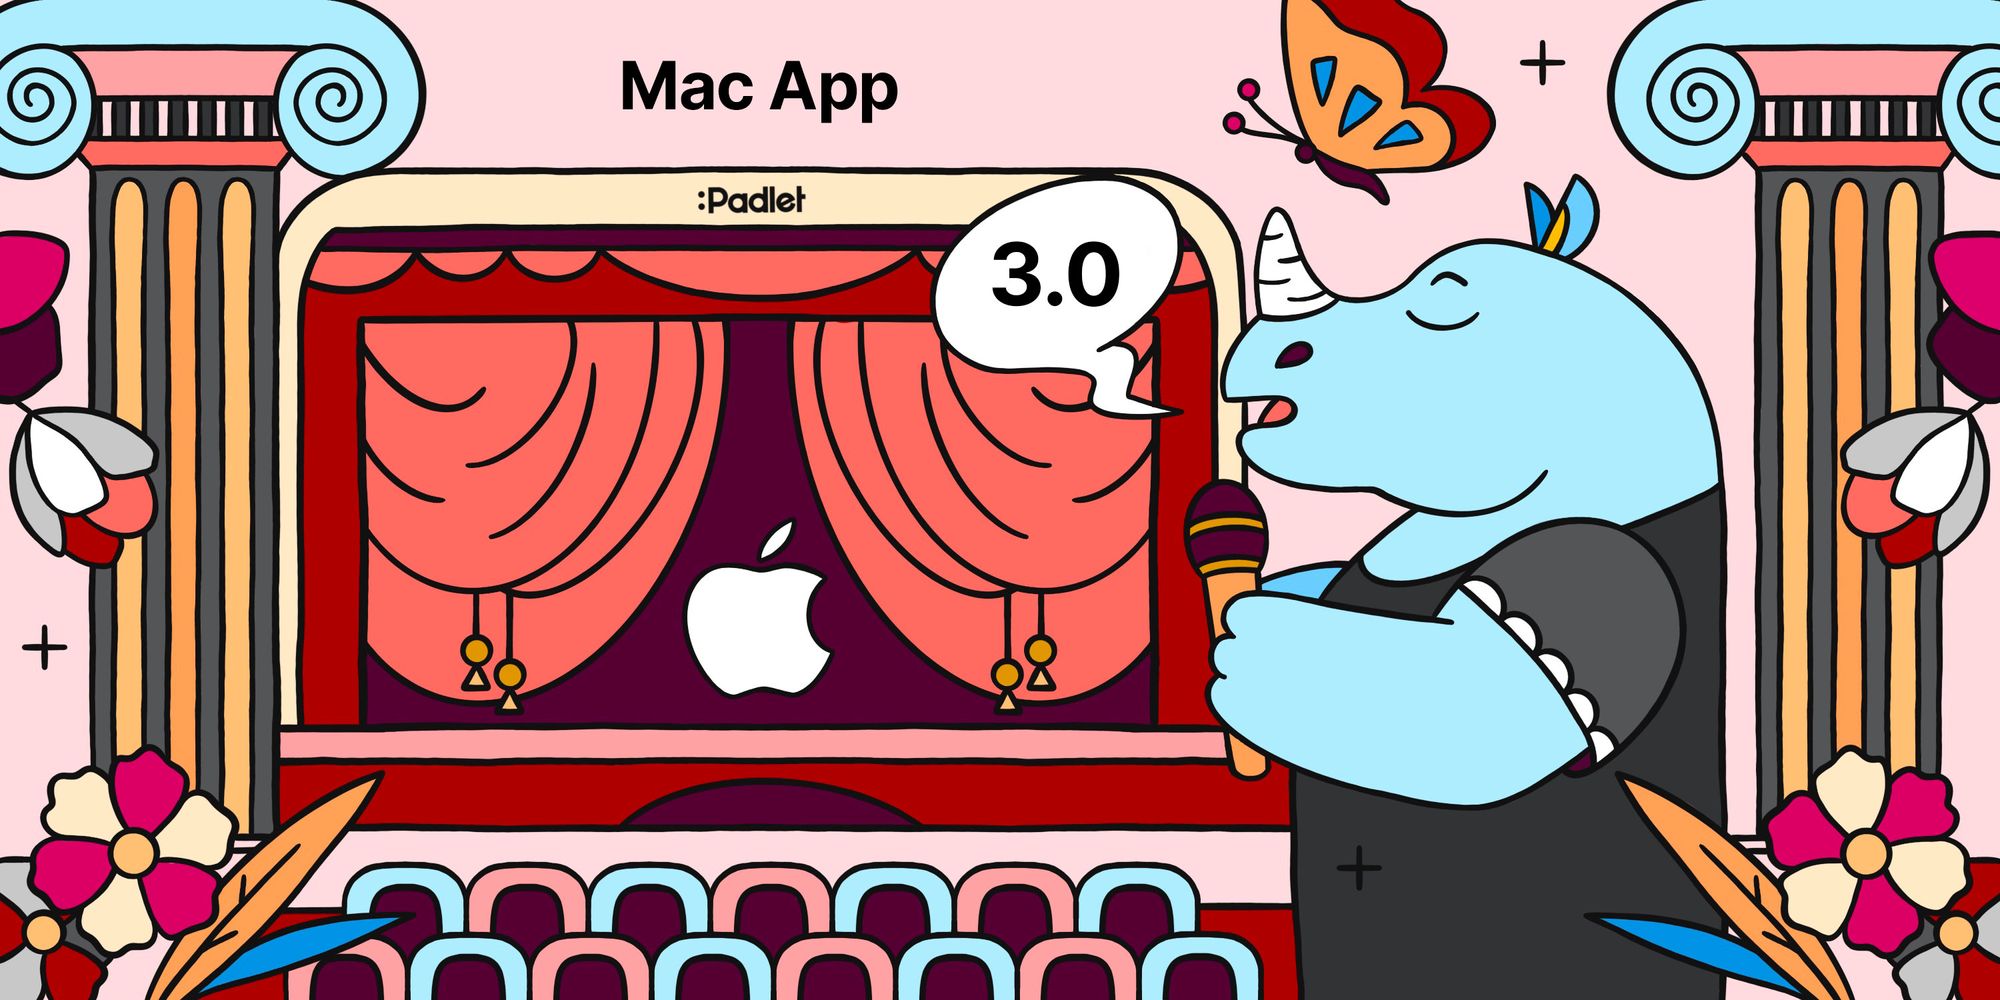 Mac app v3.0